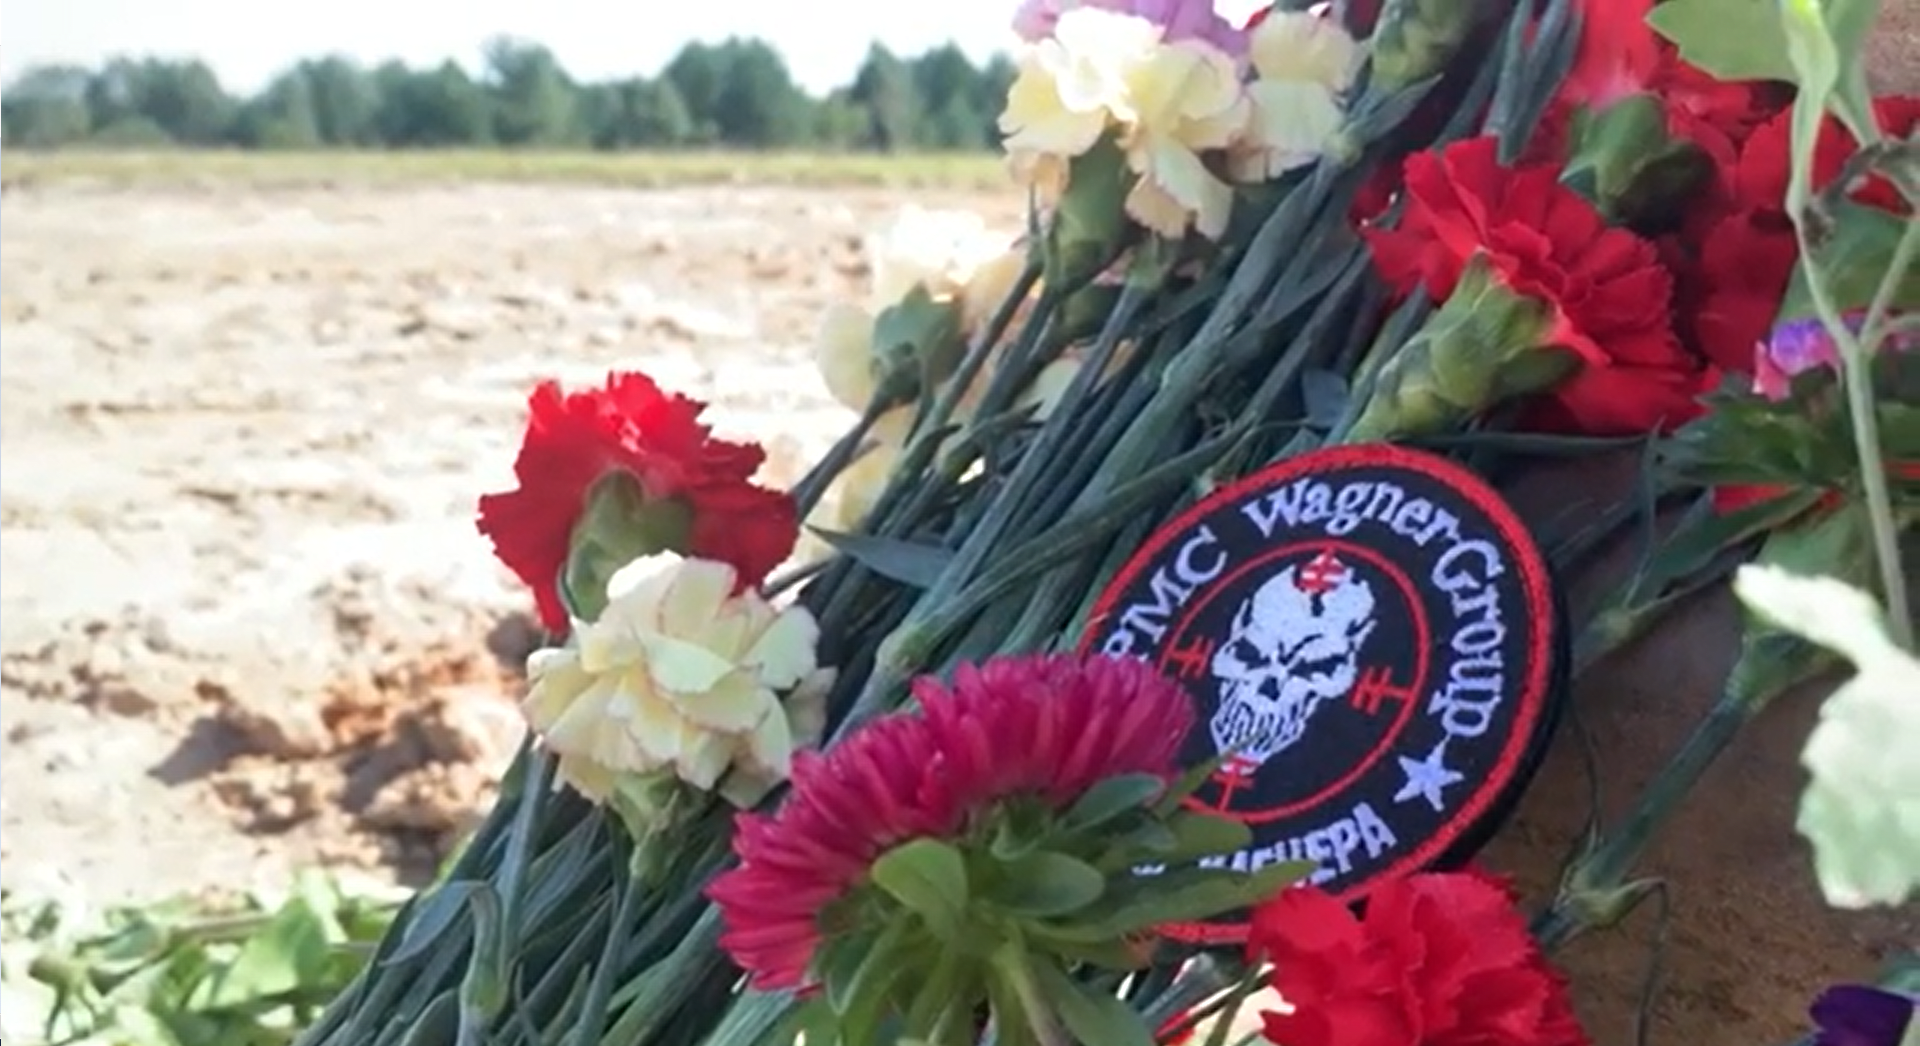 Štáb CNN natáčel na místě letecké nehody, kde zemřel i Jevgenij Prigožin